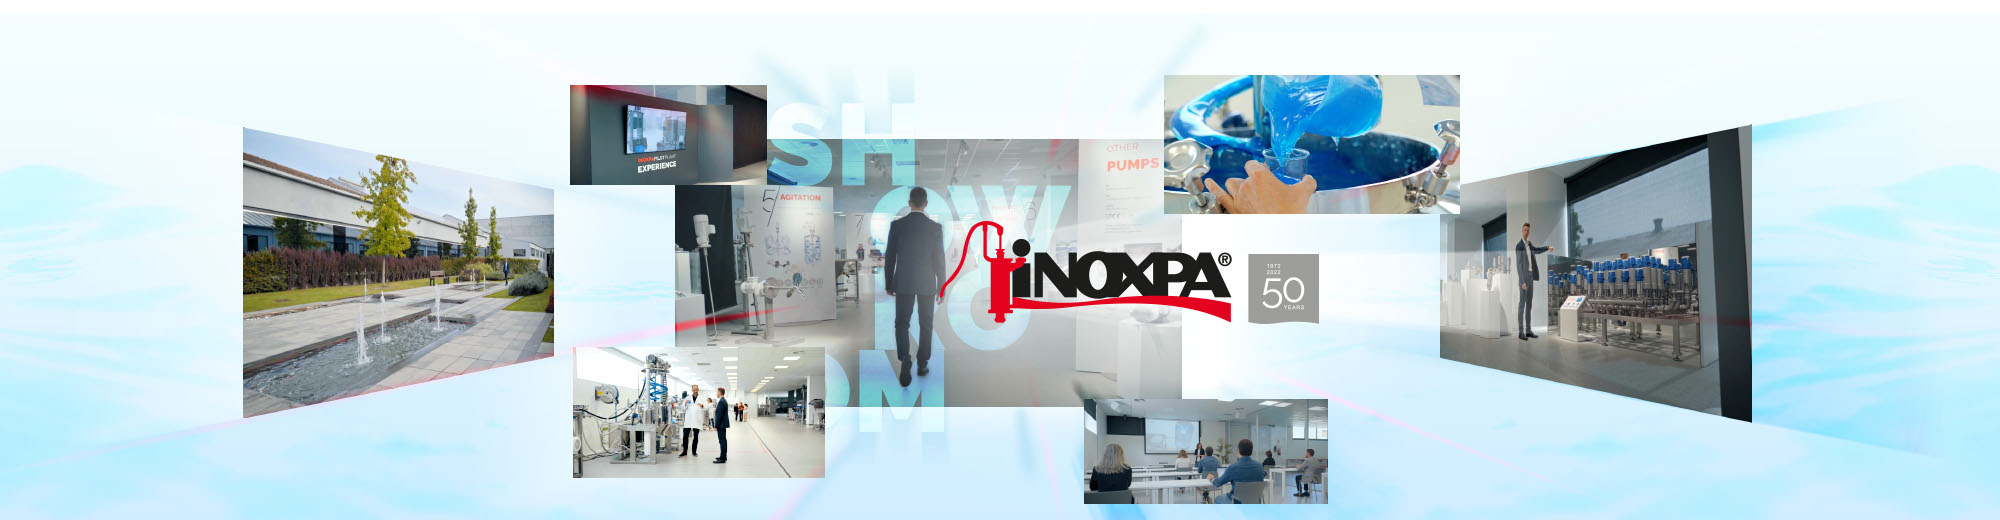 INOXPA EXPERIENCE